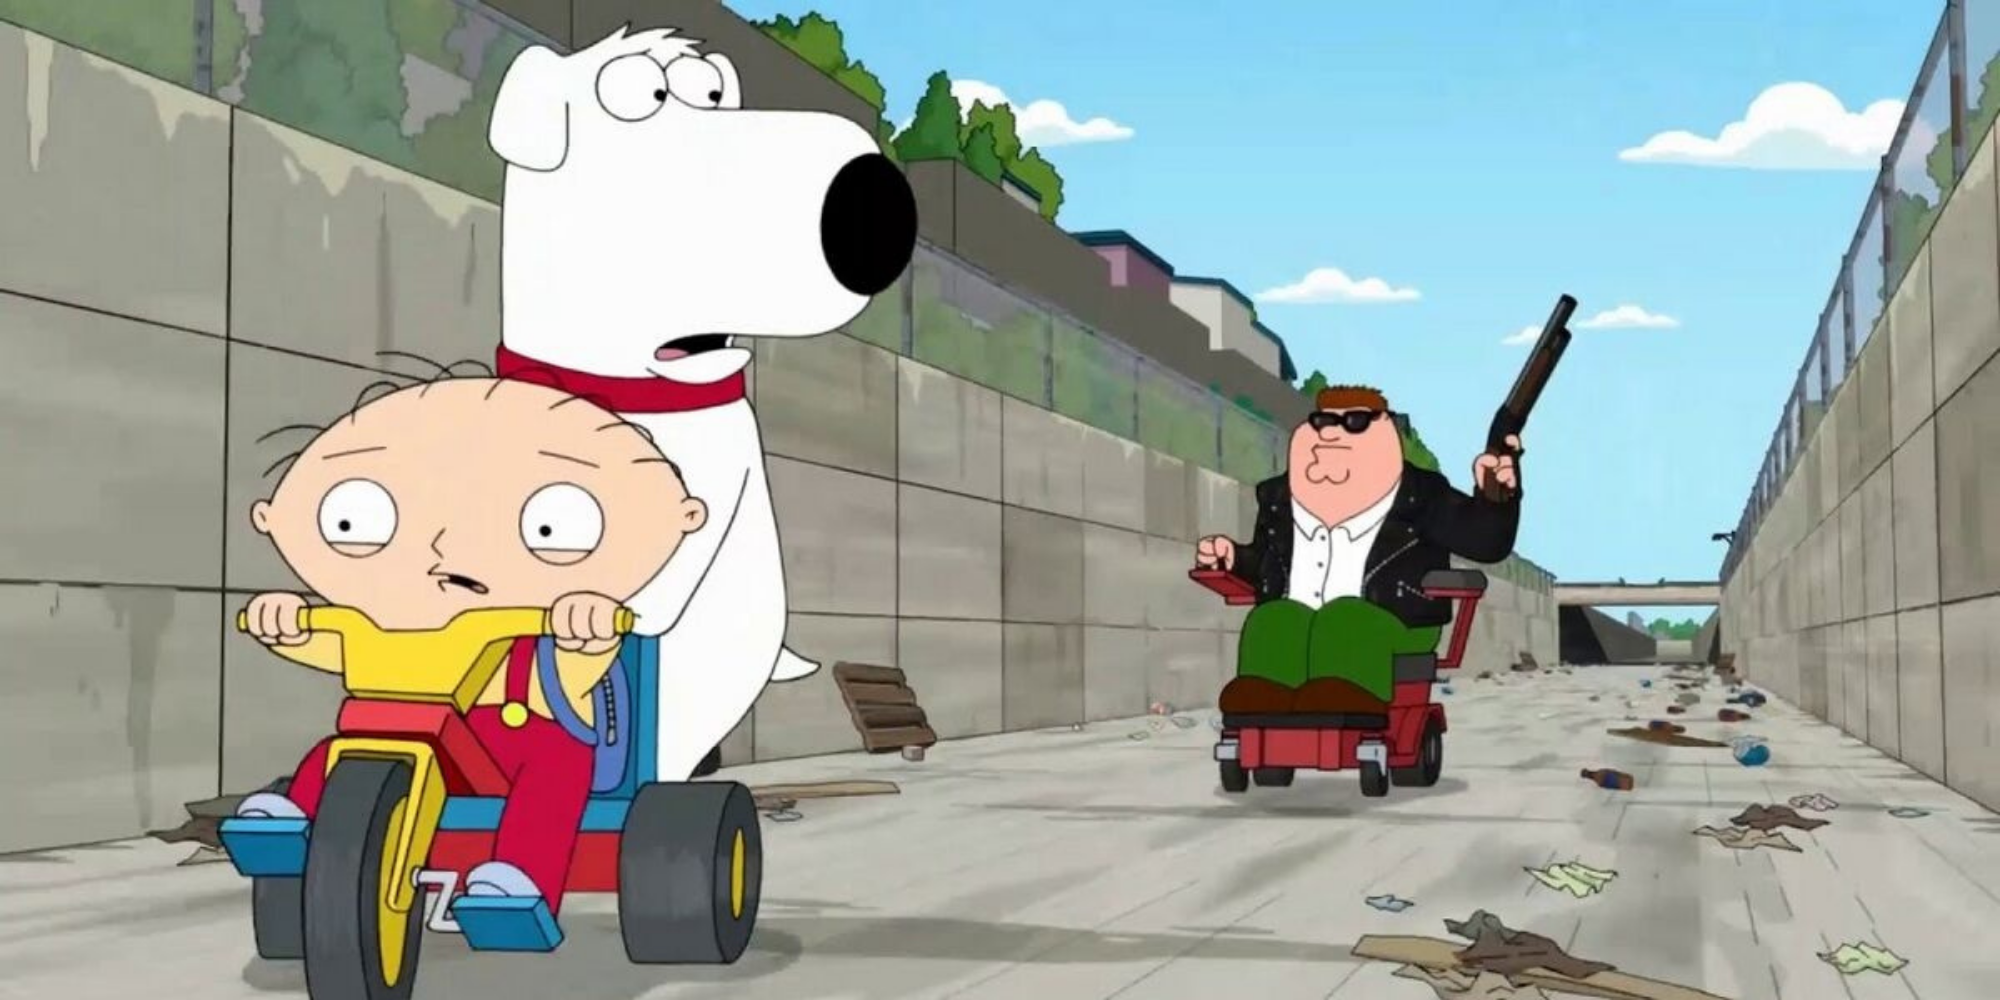 Peter pourchasse Stewie et Brian avec une arme.